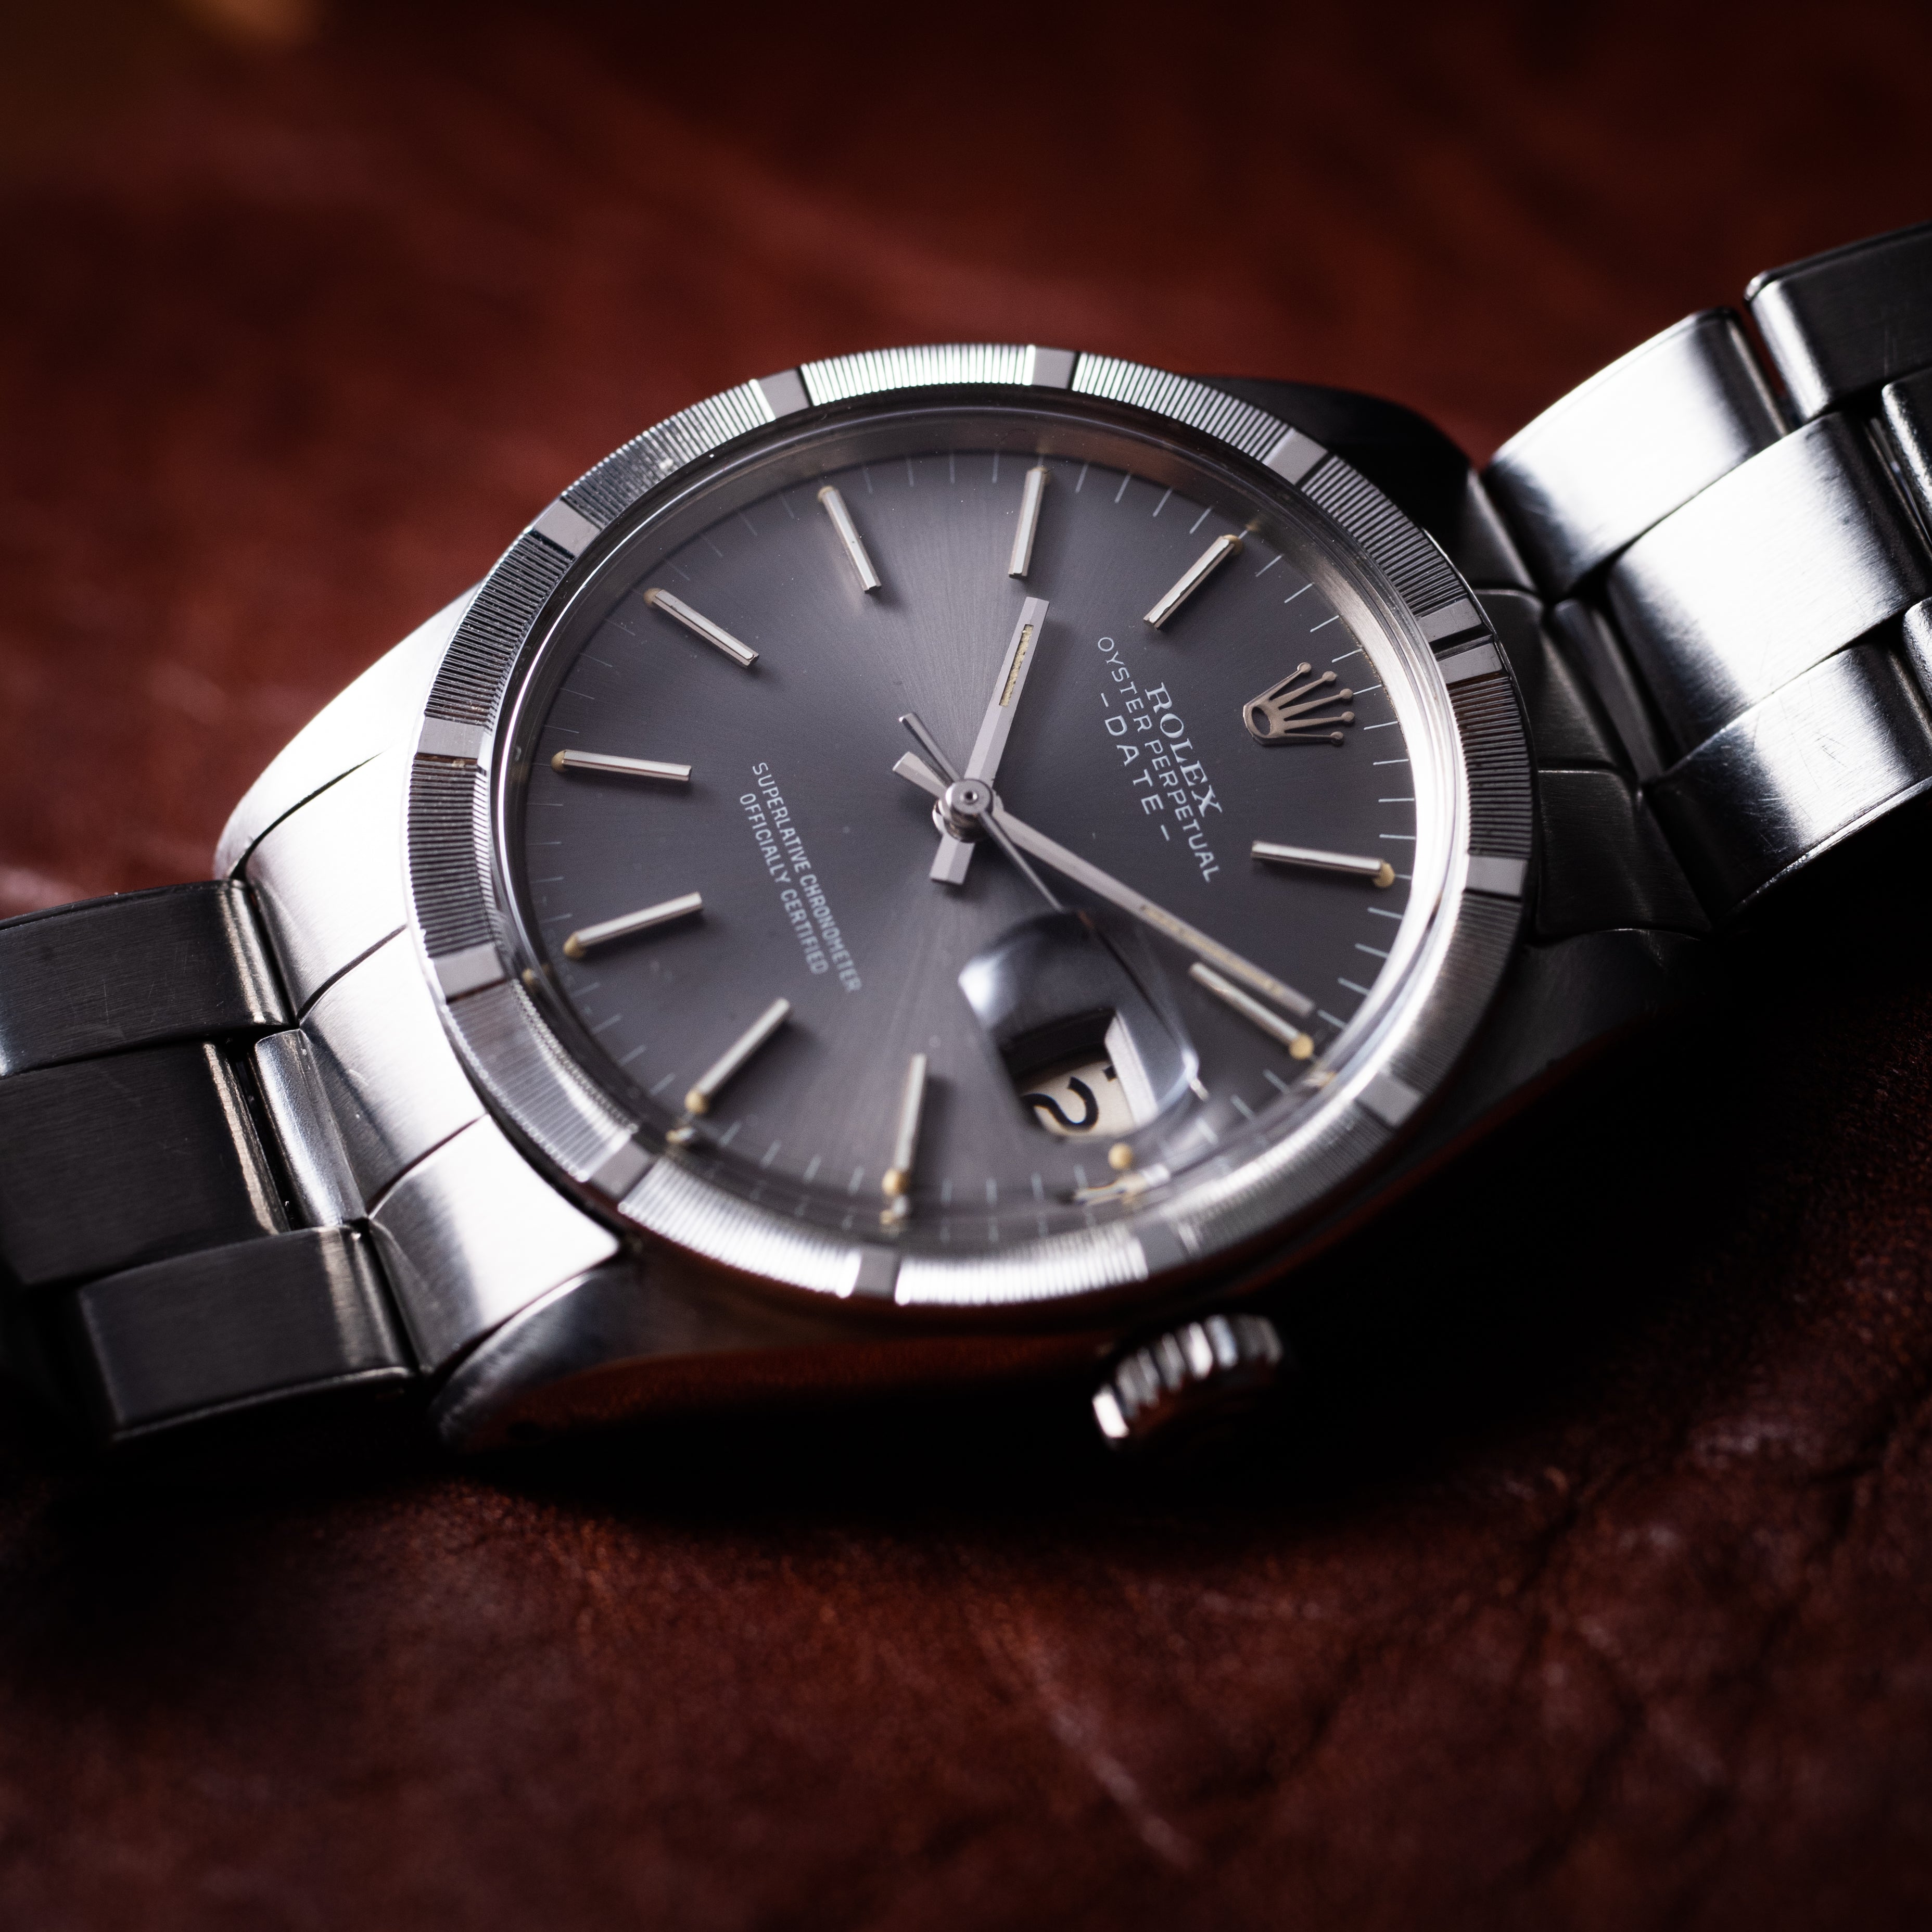 売り銀座1年保証 ロレックス 1501 1968年製 パーペチュアルデイト ショートインデックス ムクブレス メンズ 自動巻 腕時計 OH済 男性用